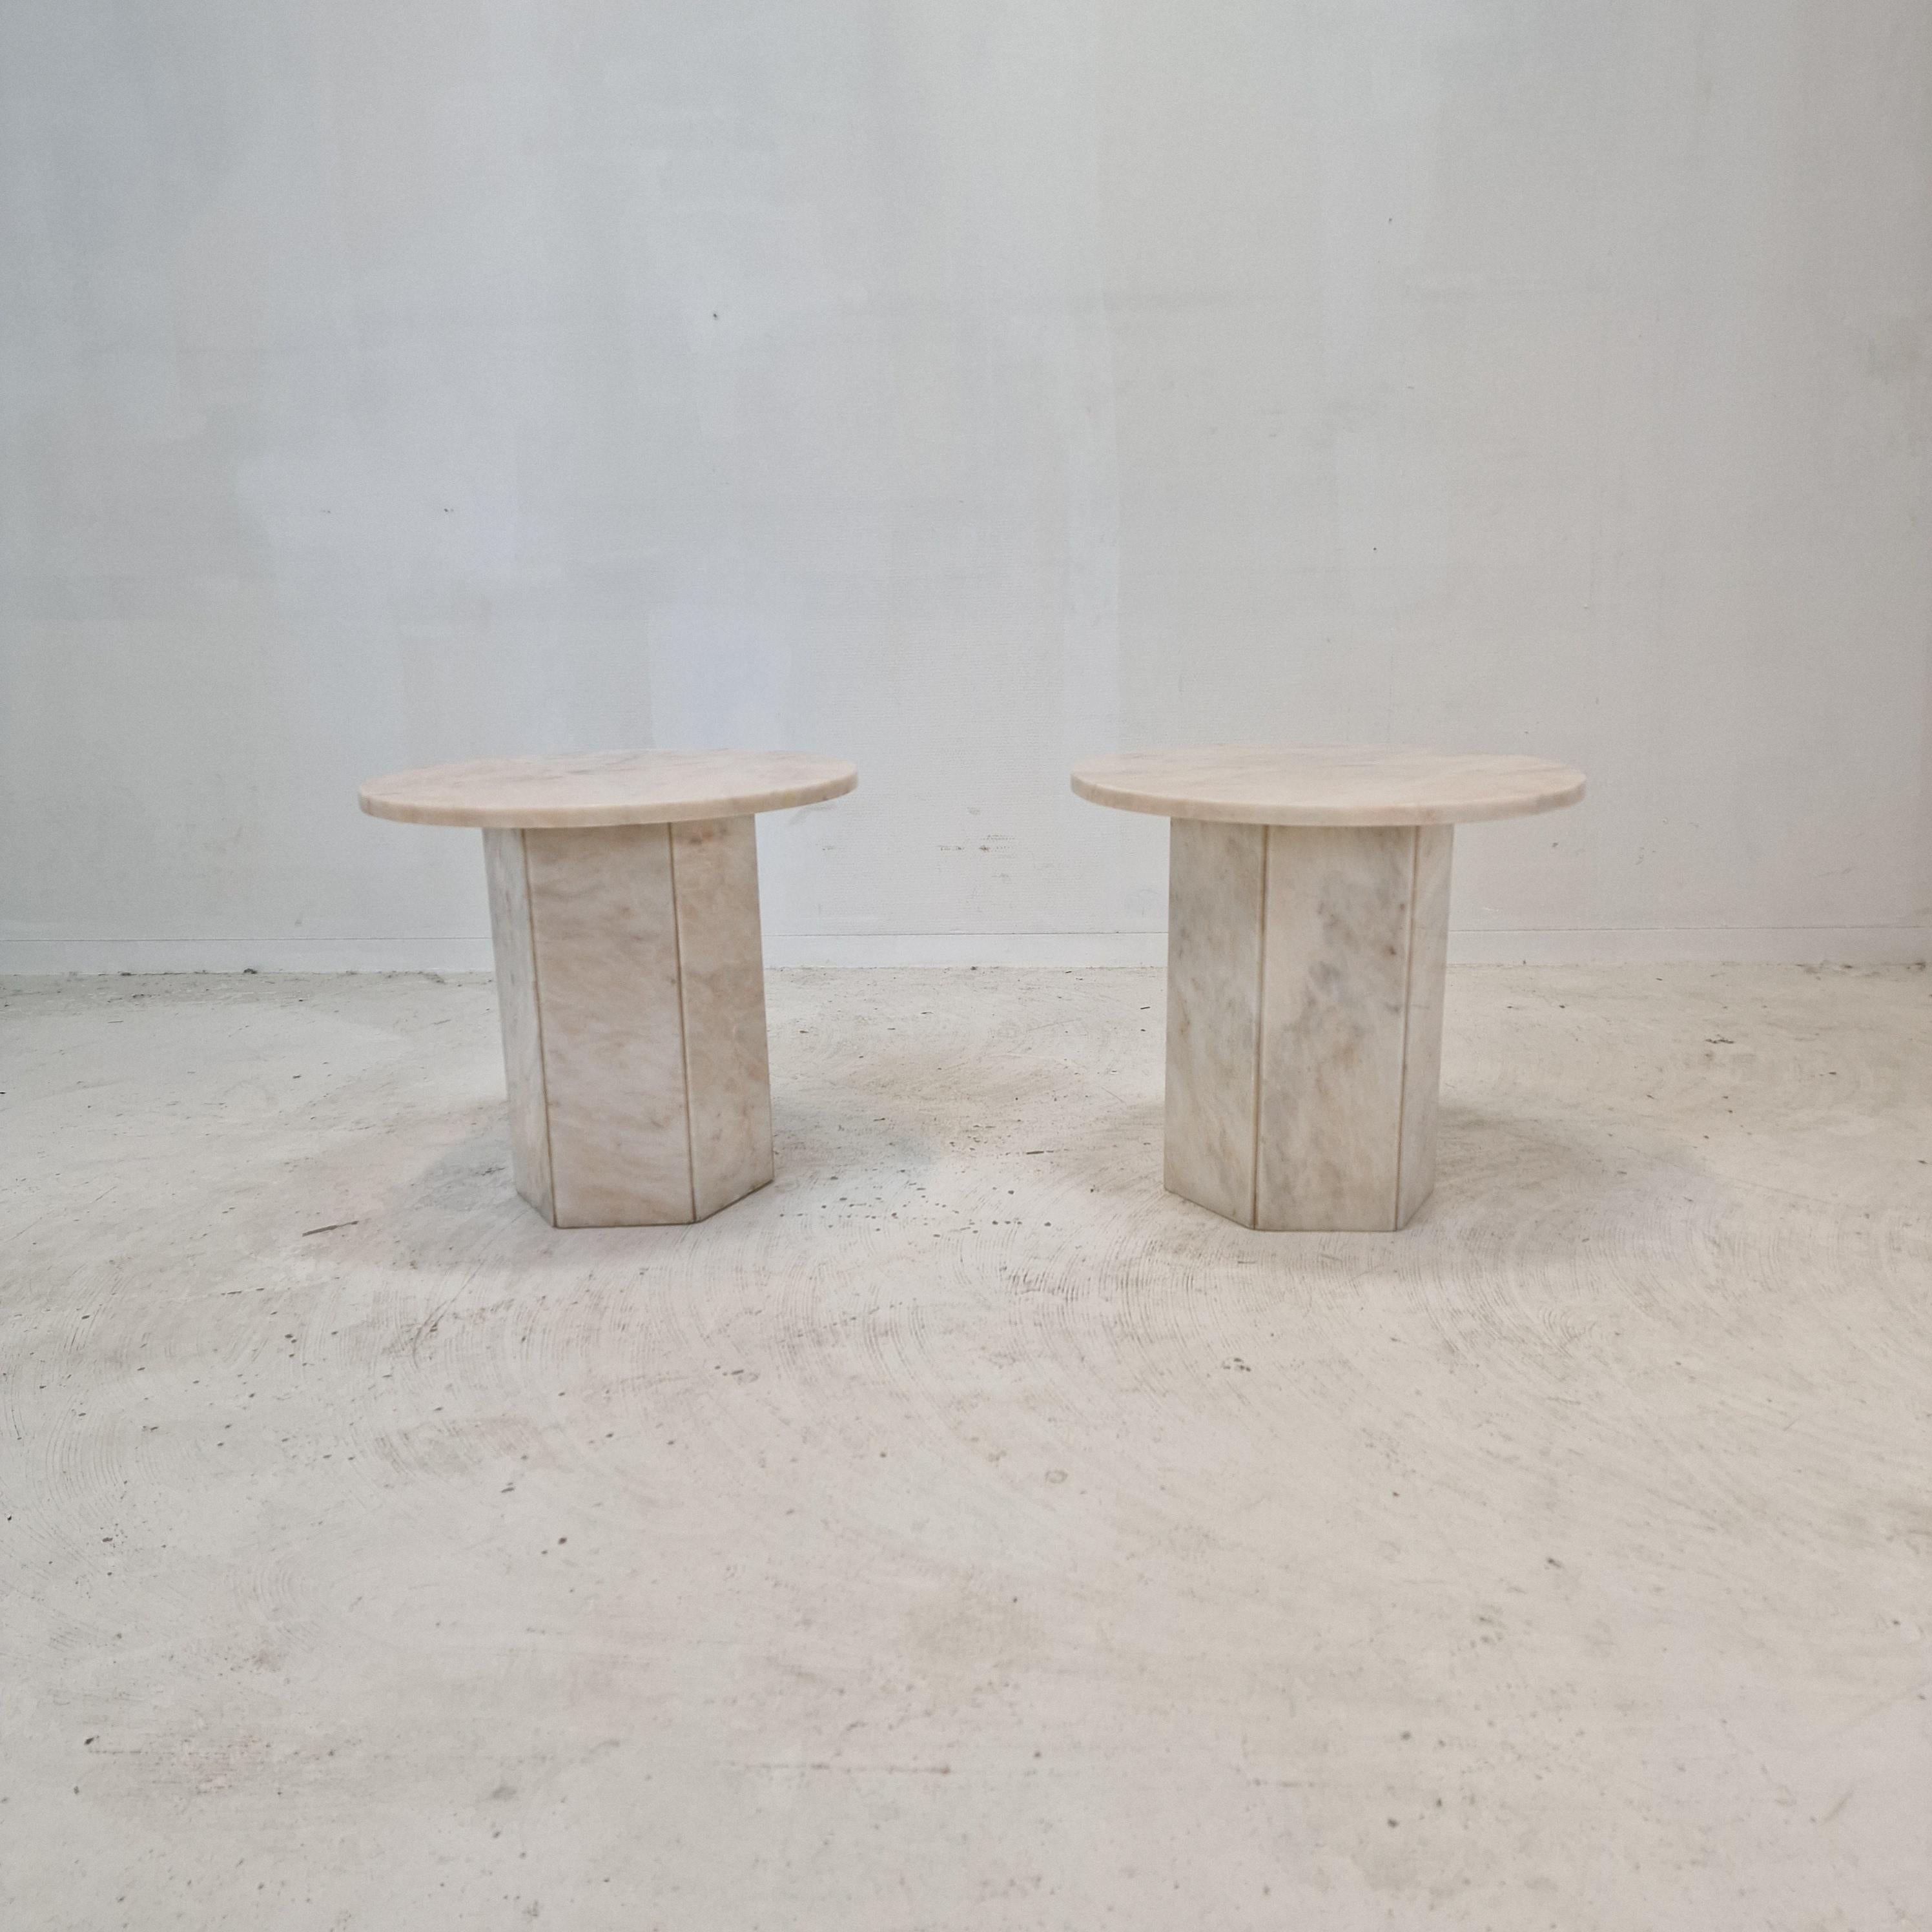 Très bel ensemble de 2 tables basses ou tables d'appoint italiennes, faites à la main en marbre. 
Ils peuvent être utilisés à l'intérieur ou à l'extérieur de la maison.

Les deux tables ont la même taille.

La plaque et la base sont en très beau